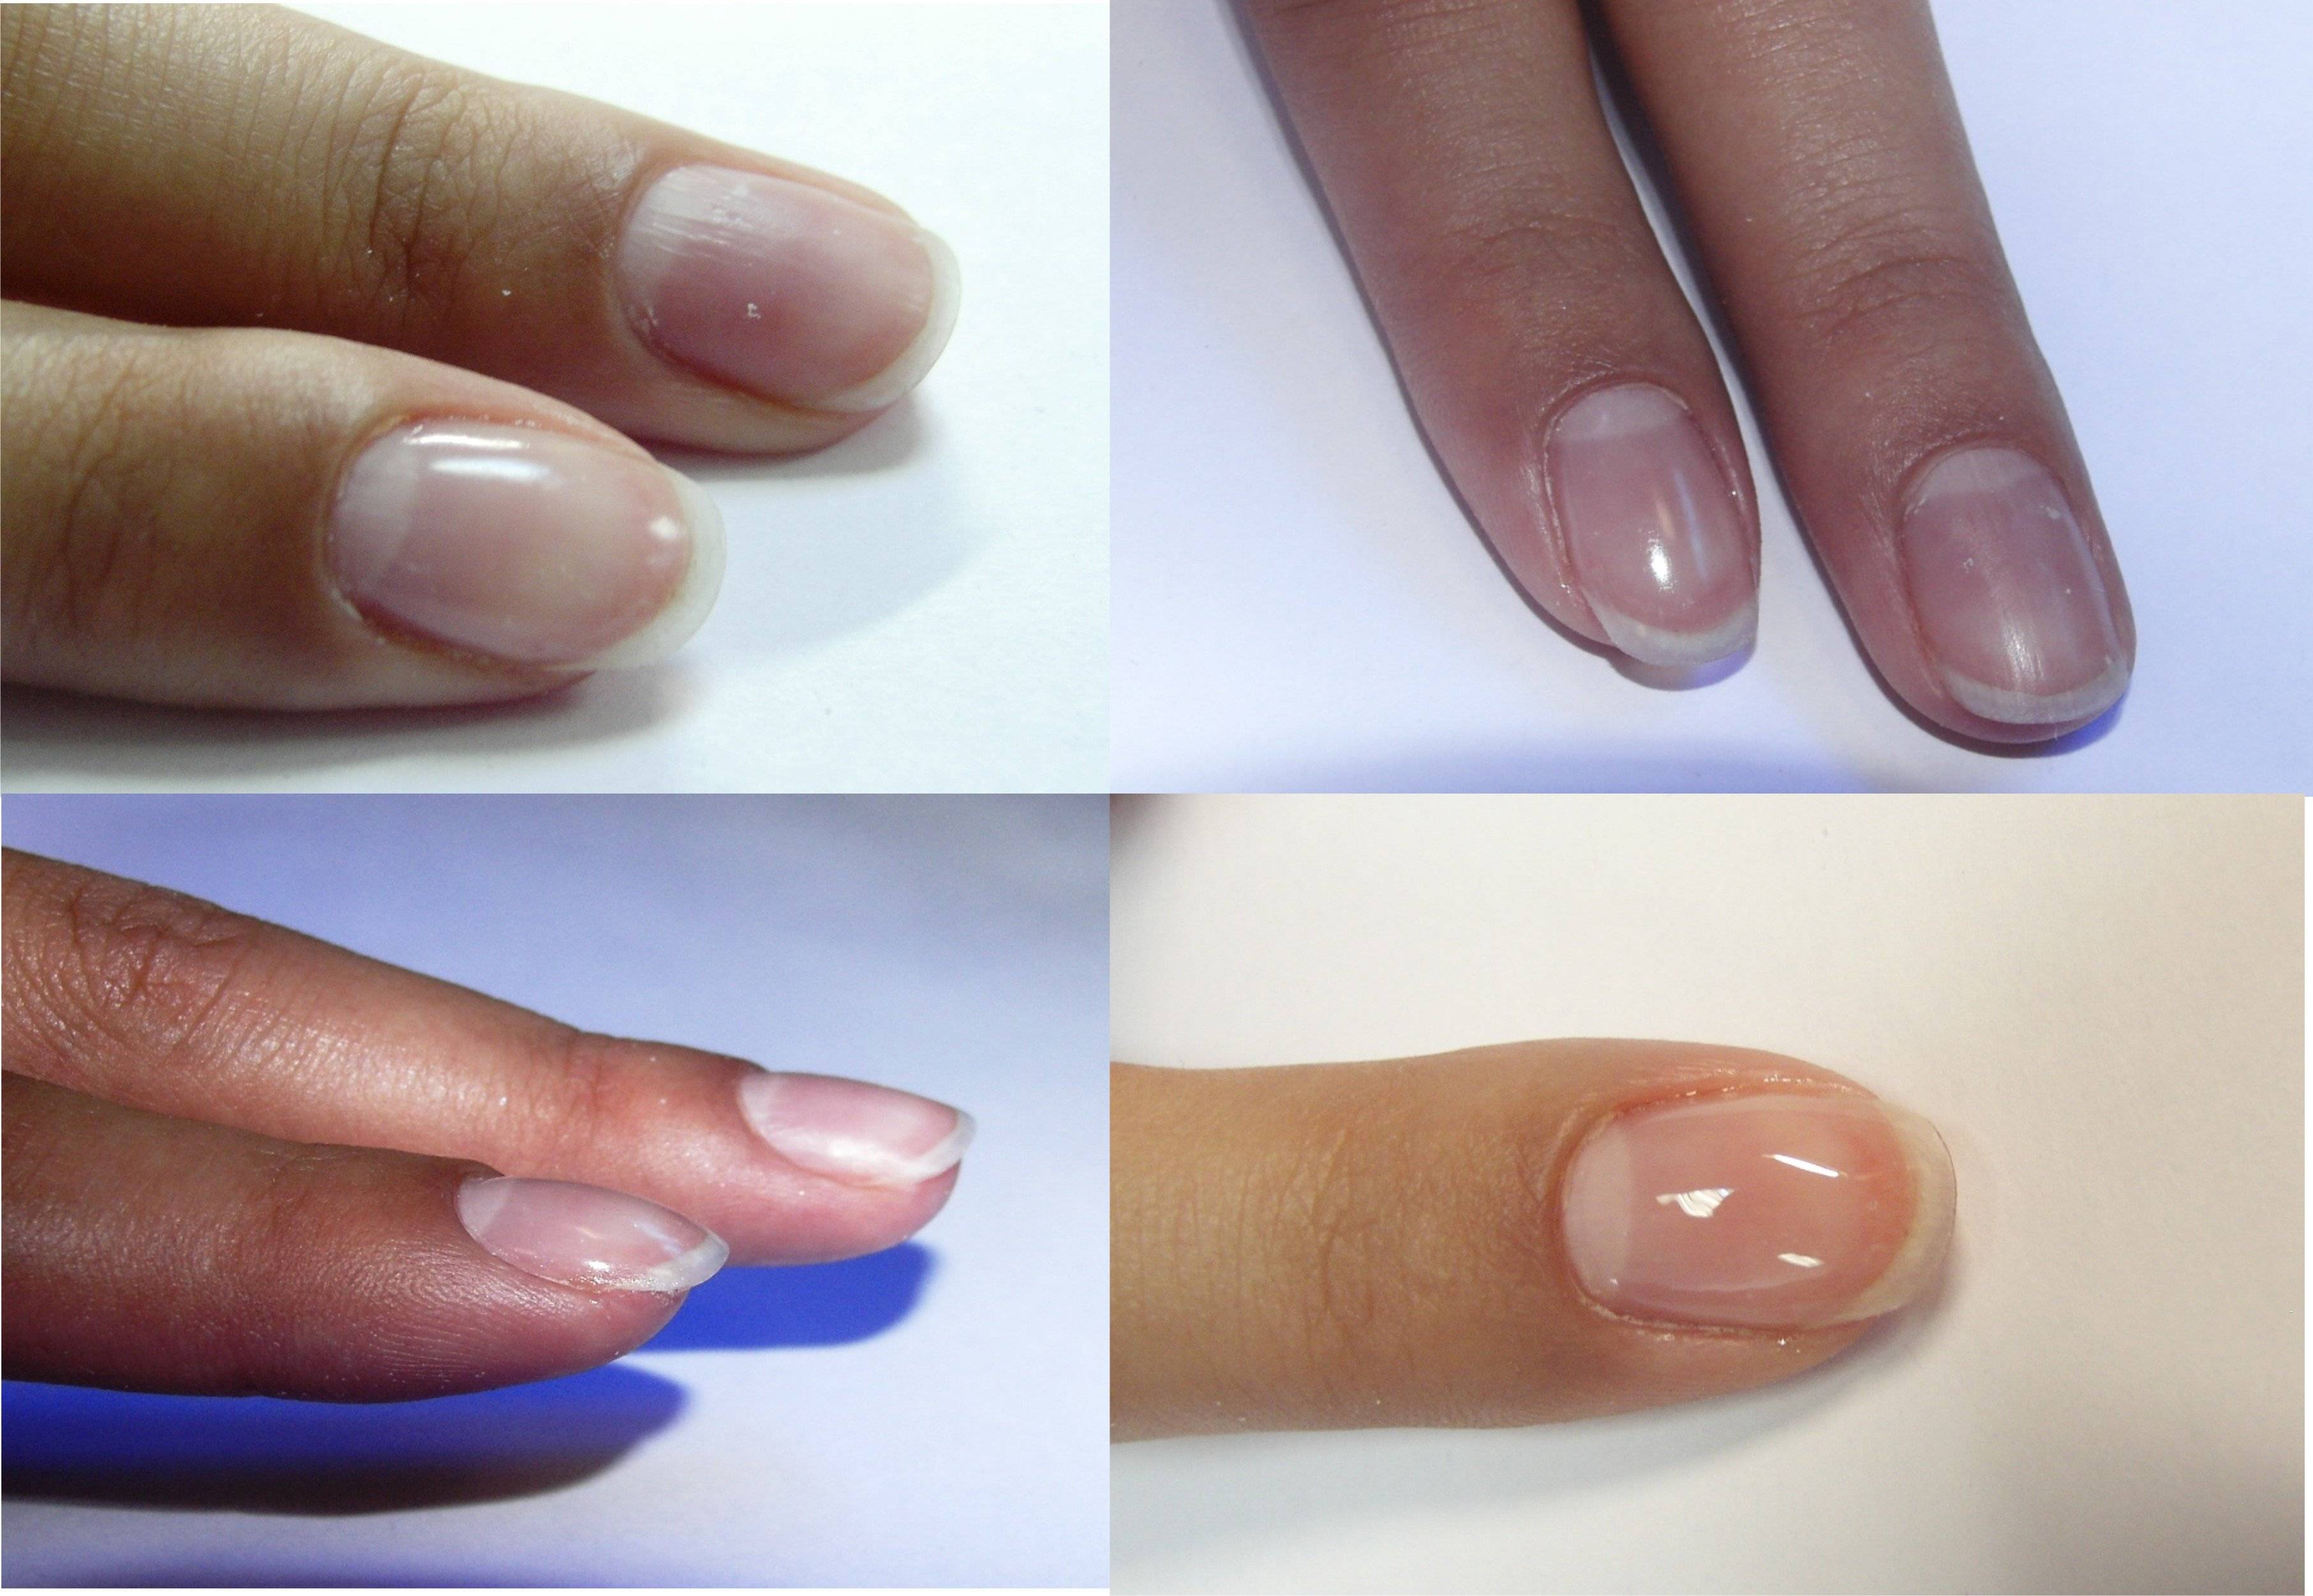 Особенности наращивания ногтей биогелем, фото. как нарастить ногти биогелем в домашних условиях пошагово